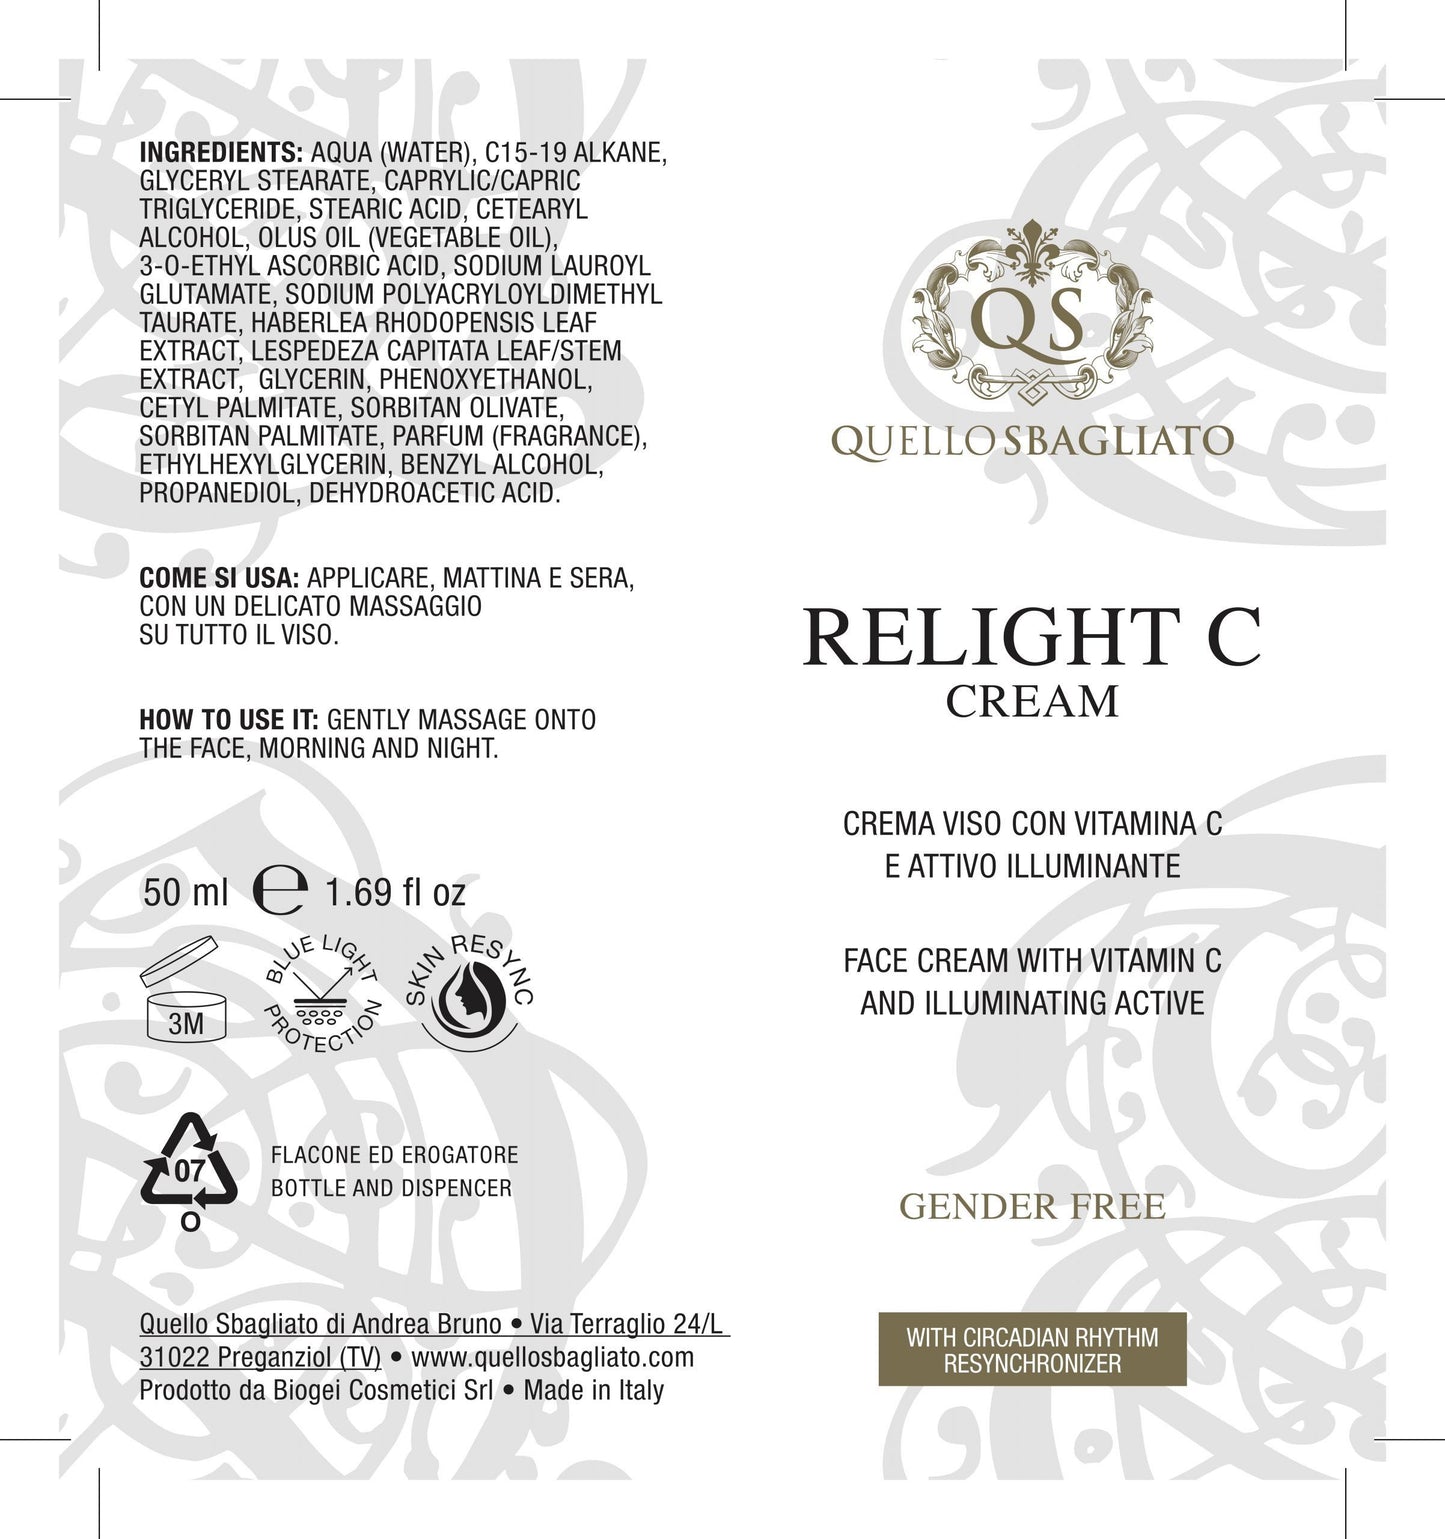 Relight C Cream